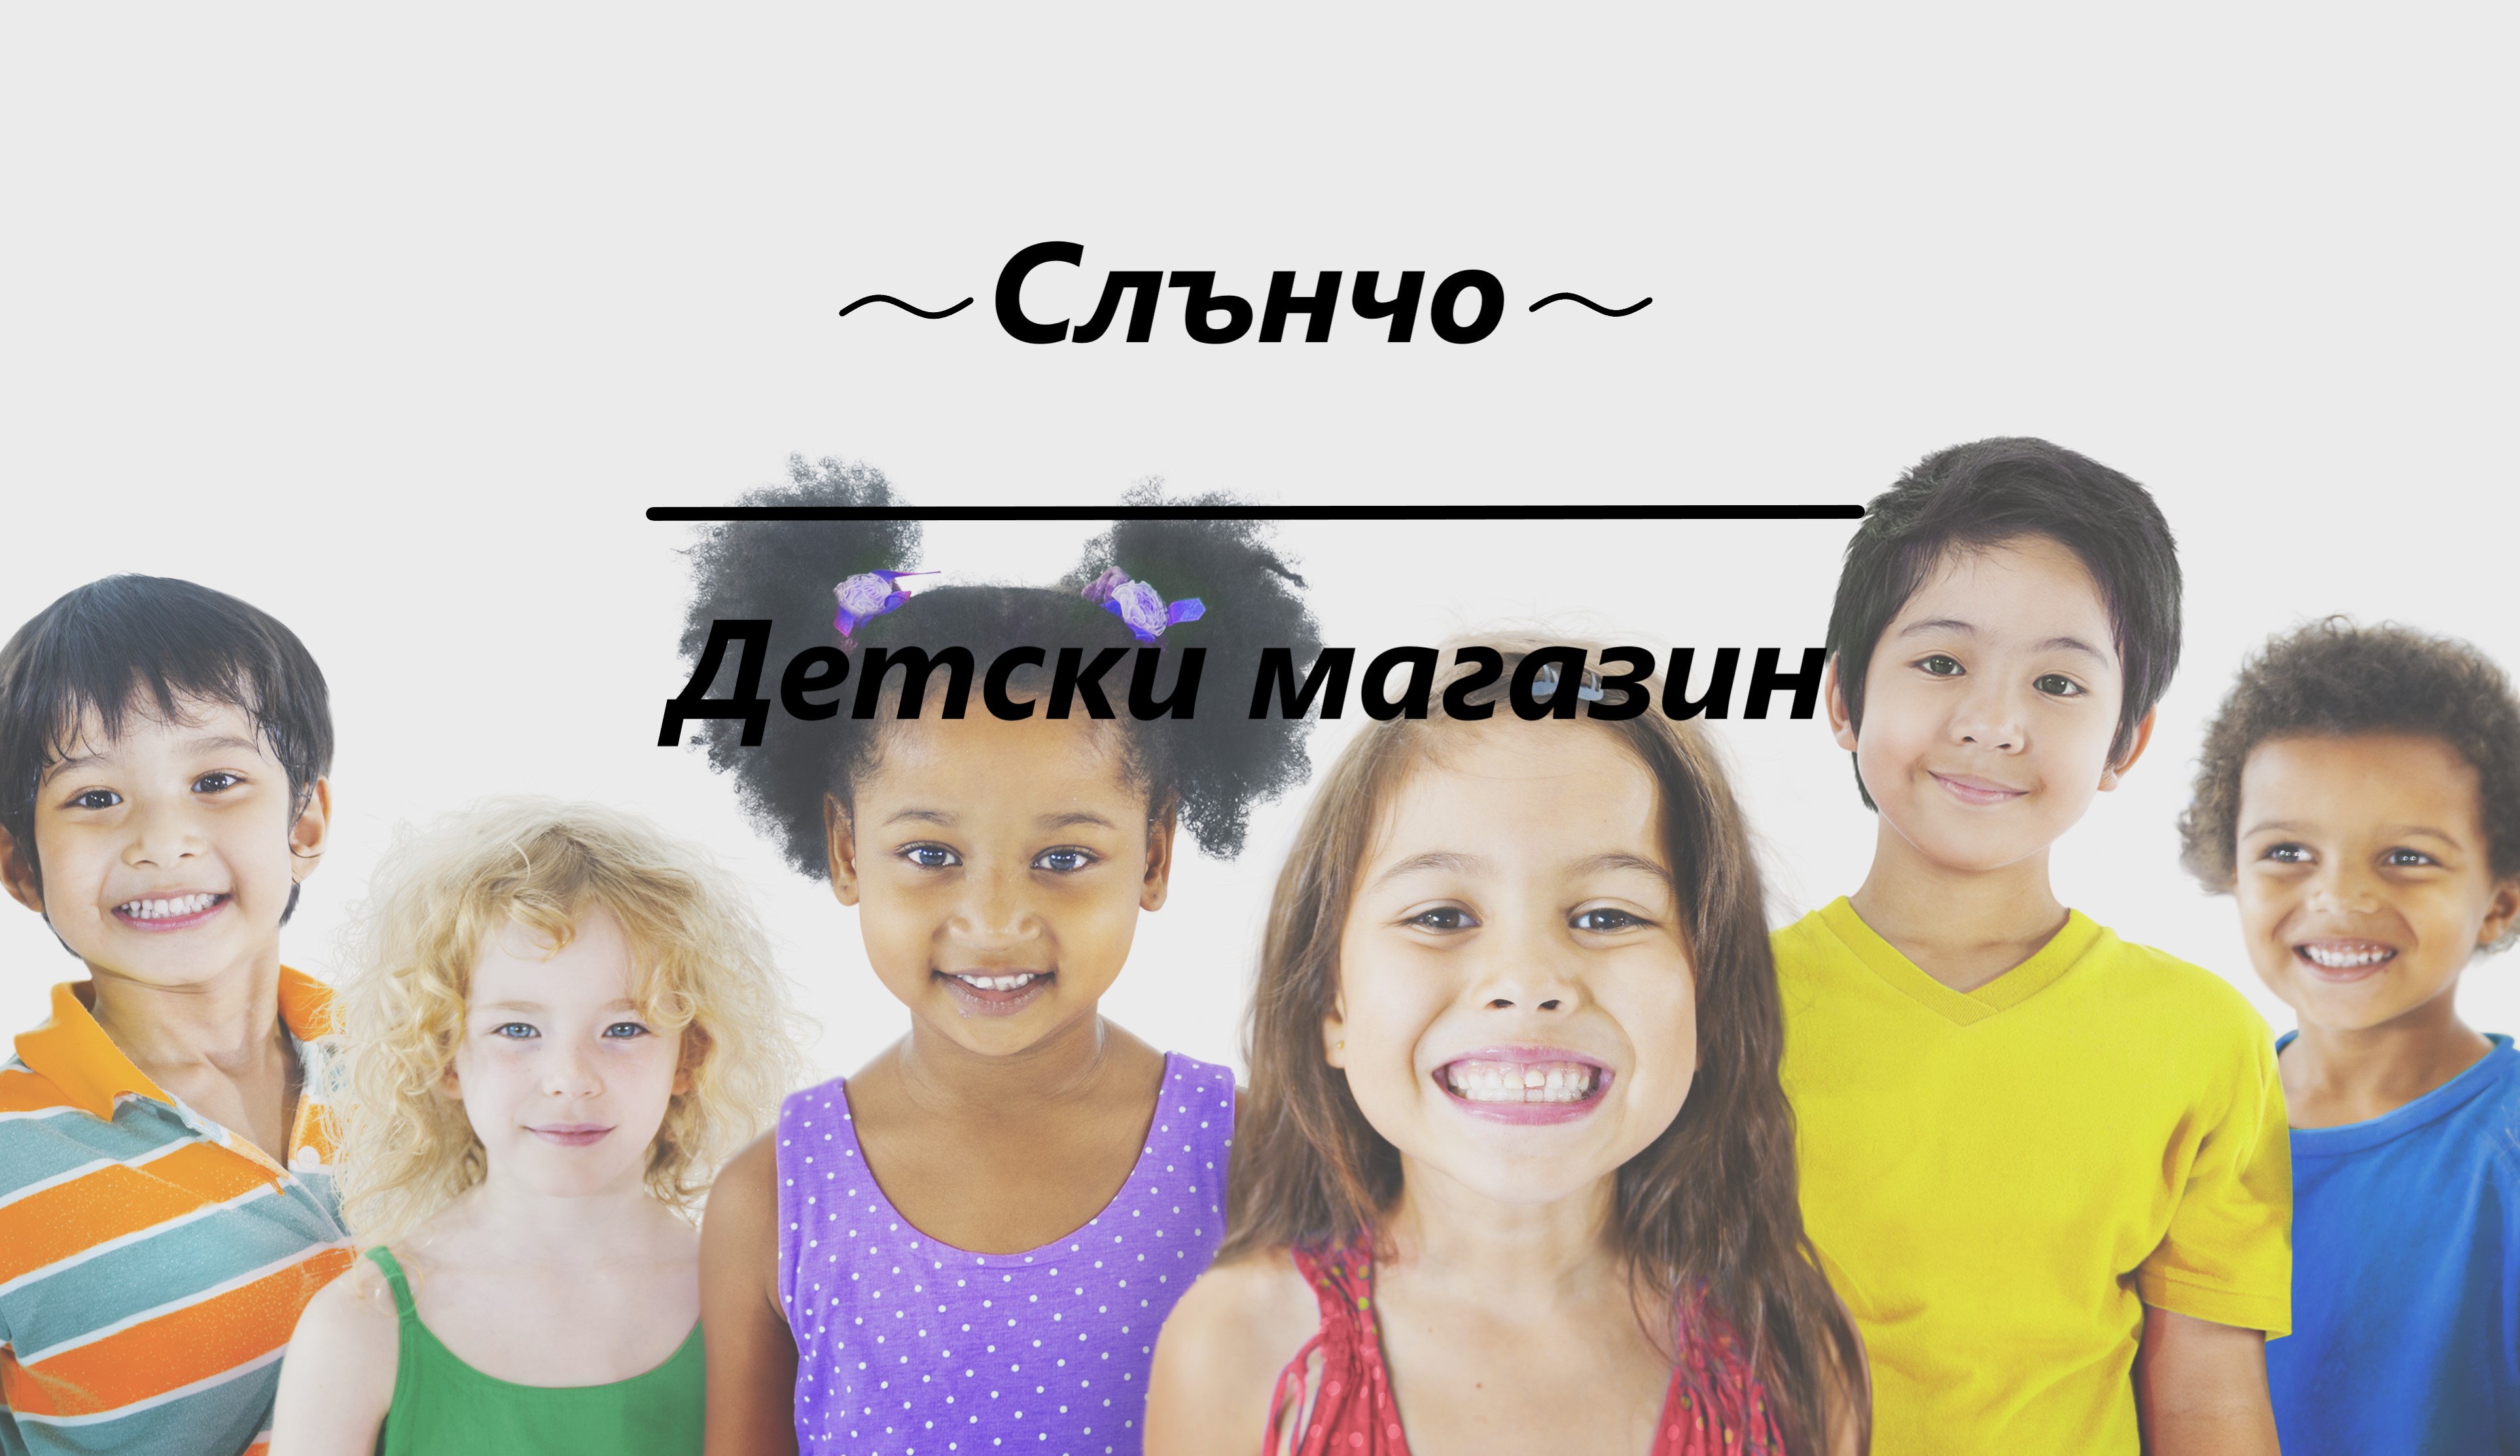 Image for "Слънчо" | Детски магазин, Търговище